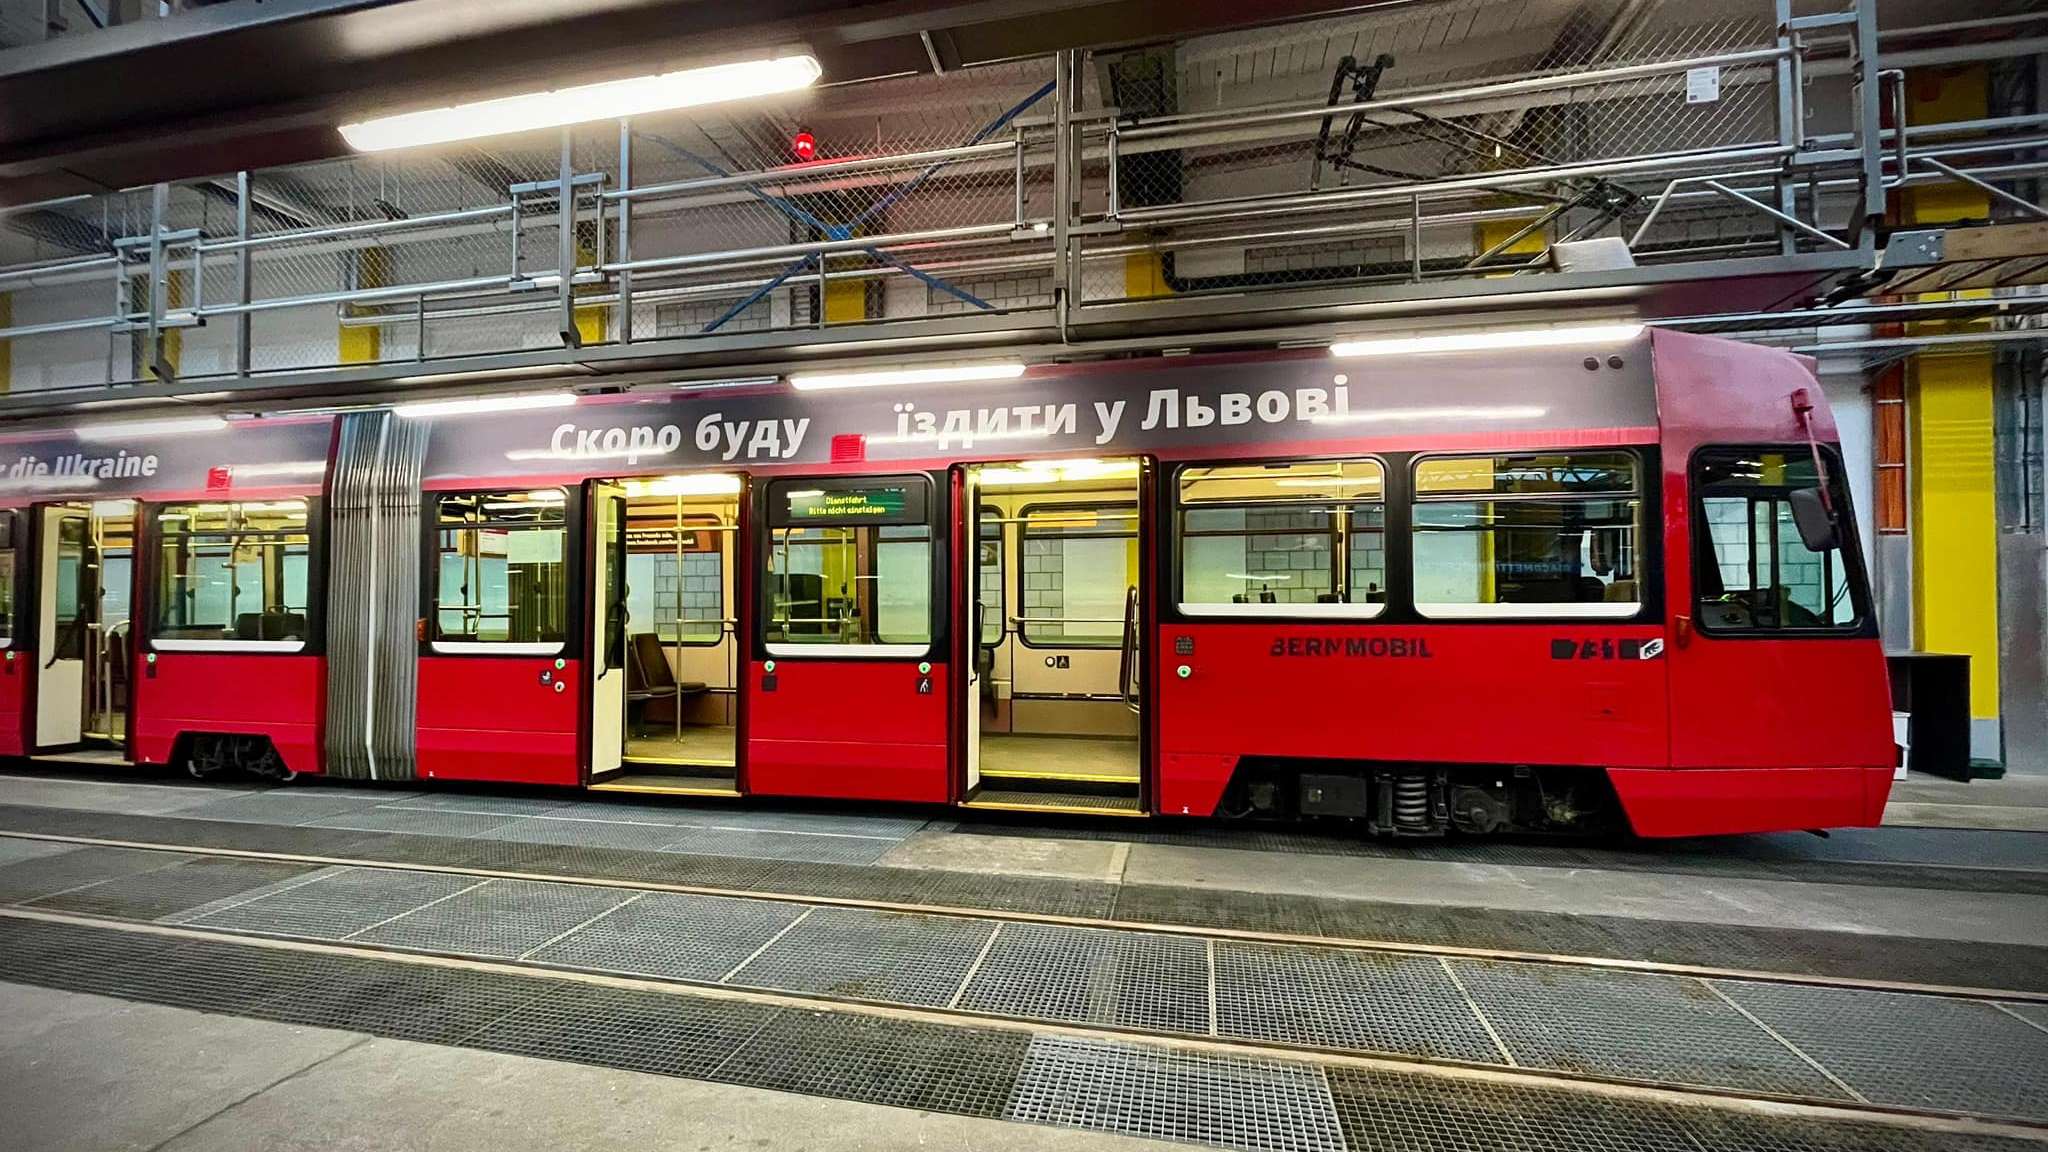 Швейцарія подарувала Львову 11 низькопідлогових трамваїв Vevey – фото